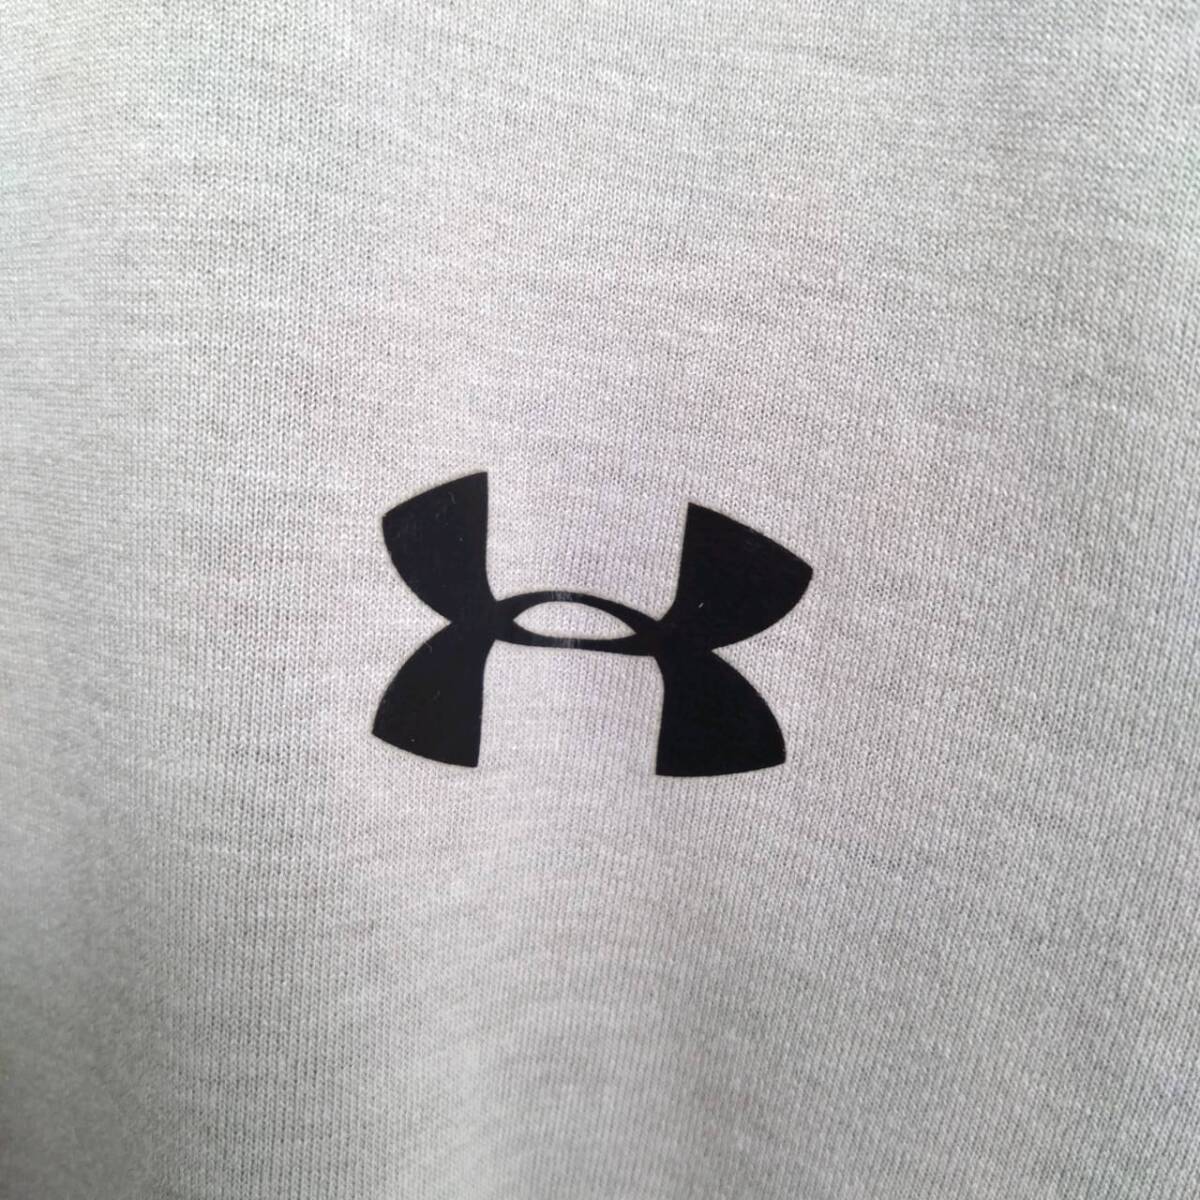 SM(日本サイズS相当) UNDER ARMOUR アンダーアーマー Tシャツ グレー 胸ロゴ 半袖 リユース ultramto ts1857